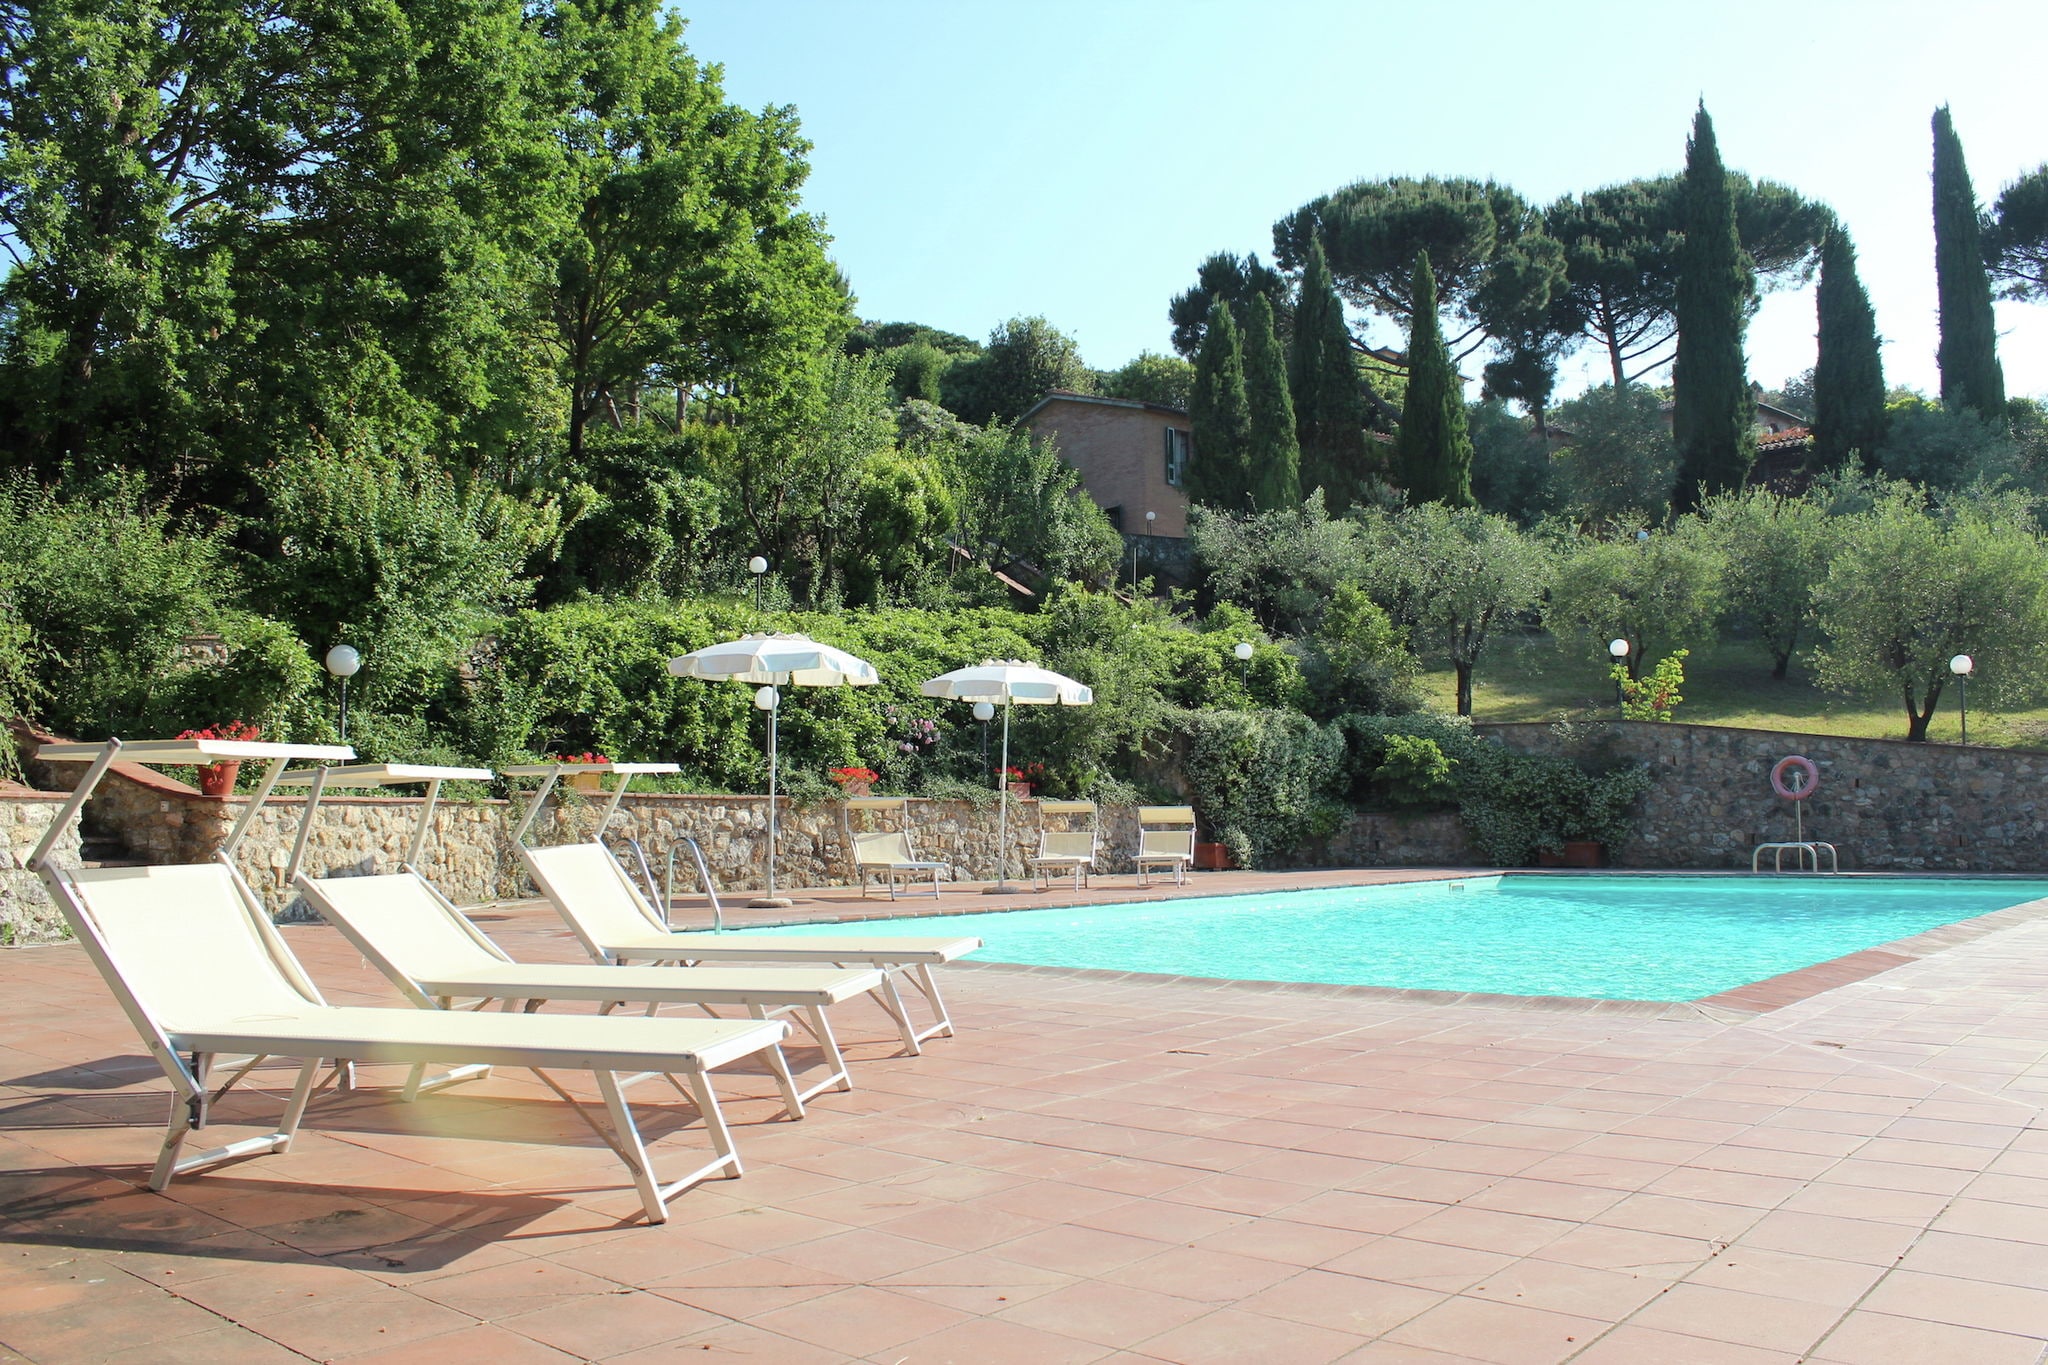 Gemütliches Ferienhaus mit Pool in Siena Italien